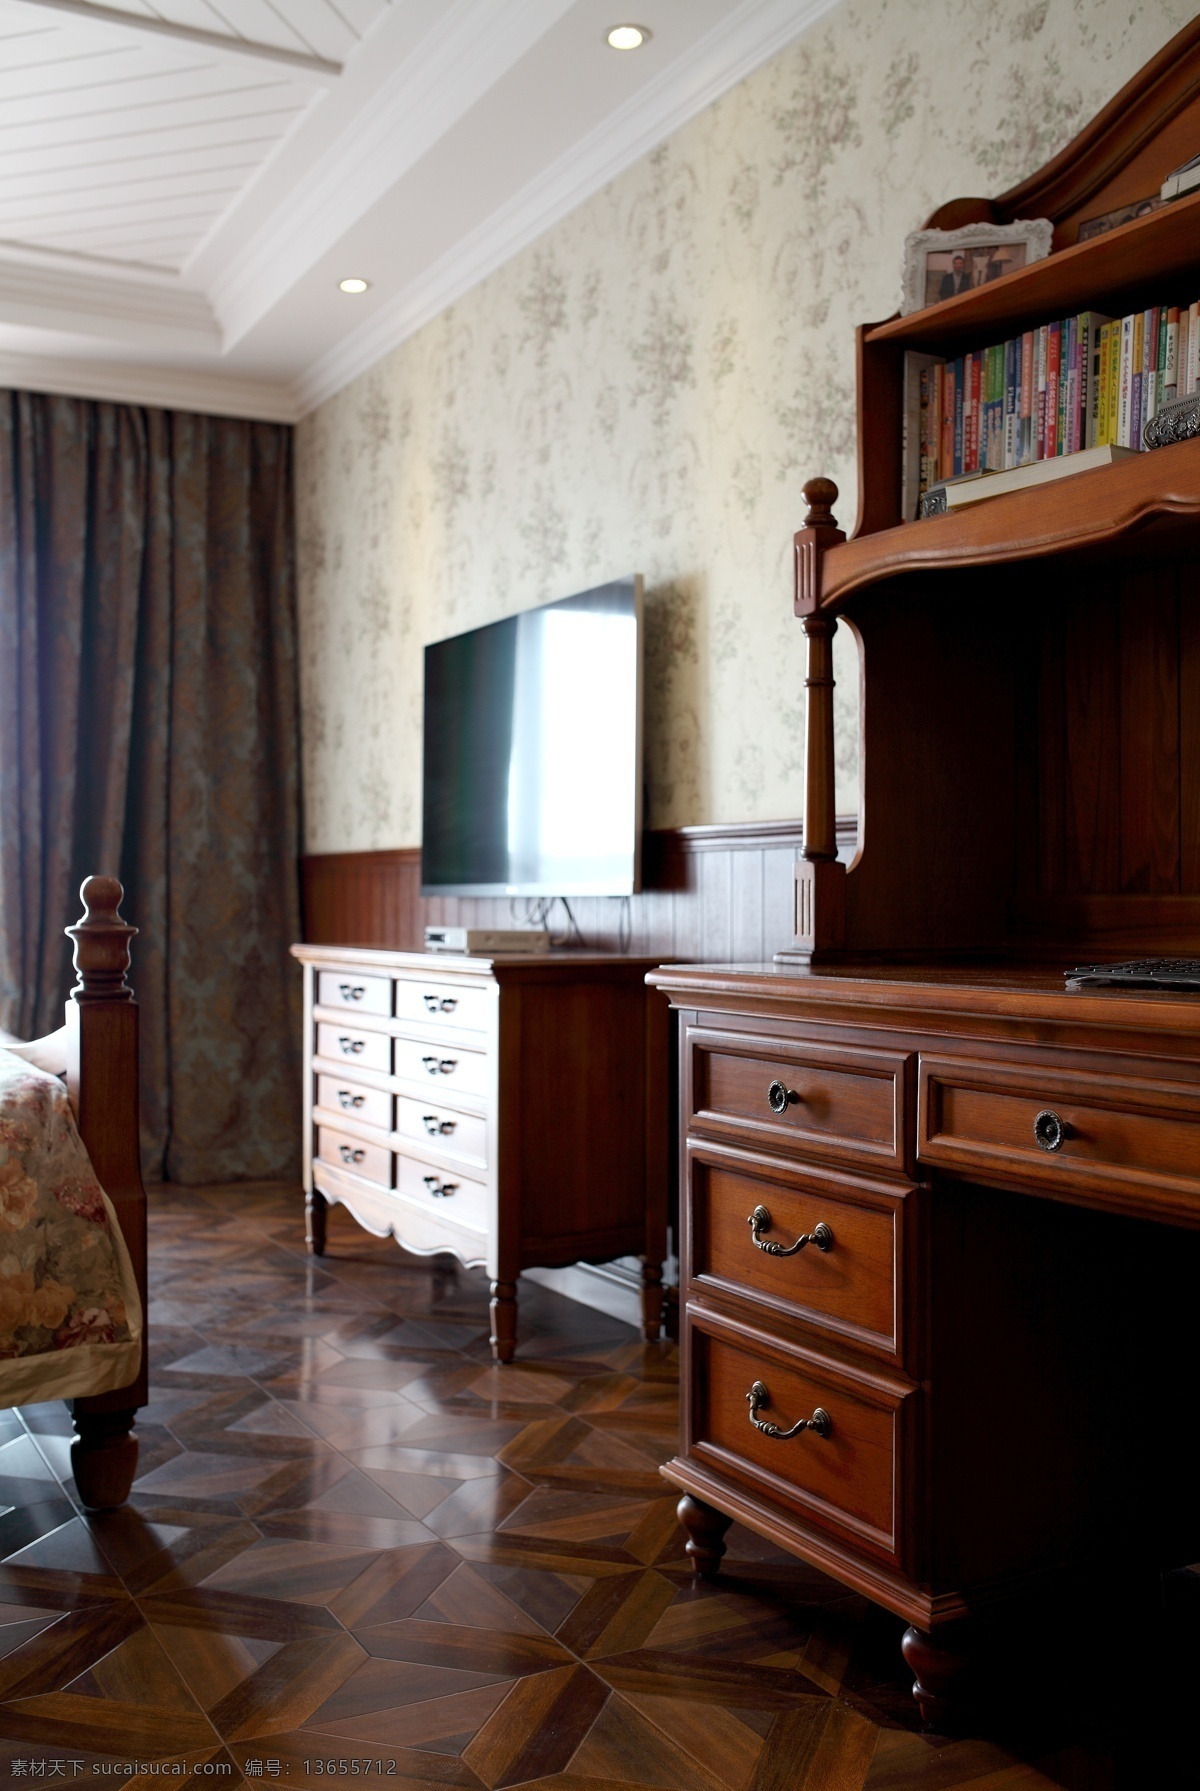 中式 时尚 客厅 木制 电视柜 室内装修 效果图 客厅装修 木地板 木制电视柜 木制柜子